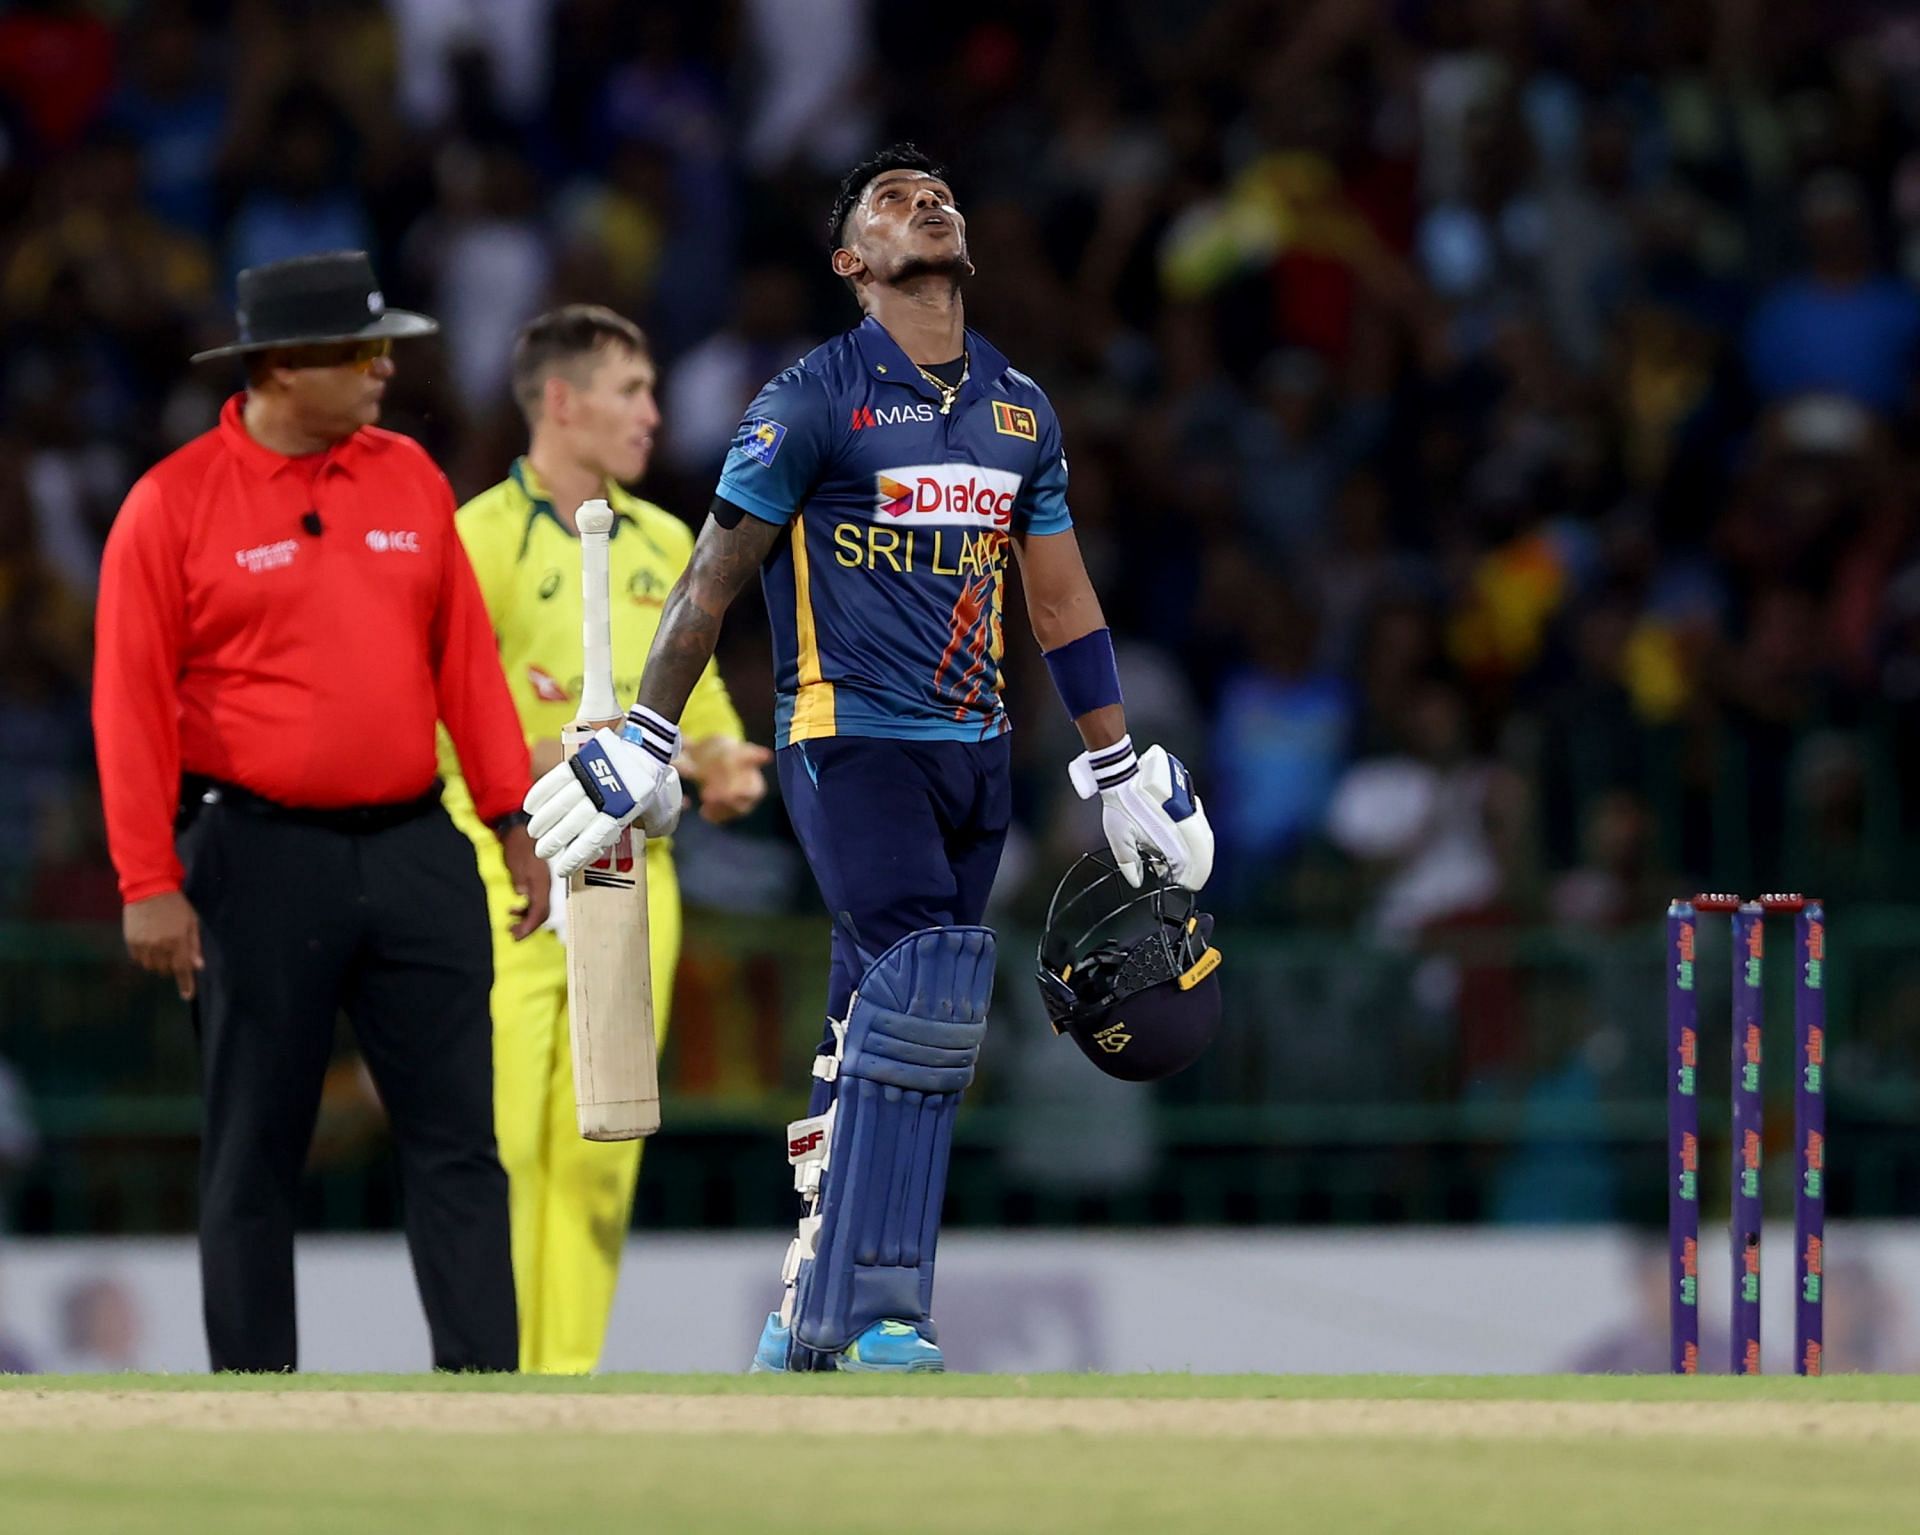 श्रीलंकाई बल्लेबाजों ने बेहतरीन बैटिंग का प्रदर्शन किया